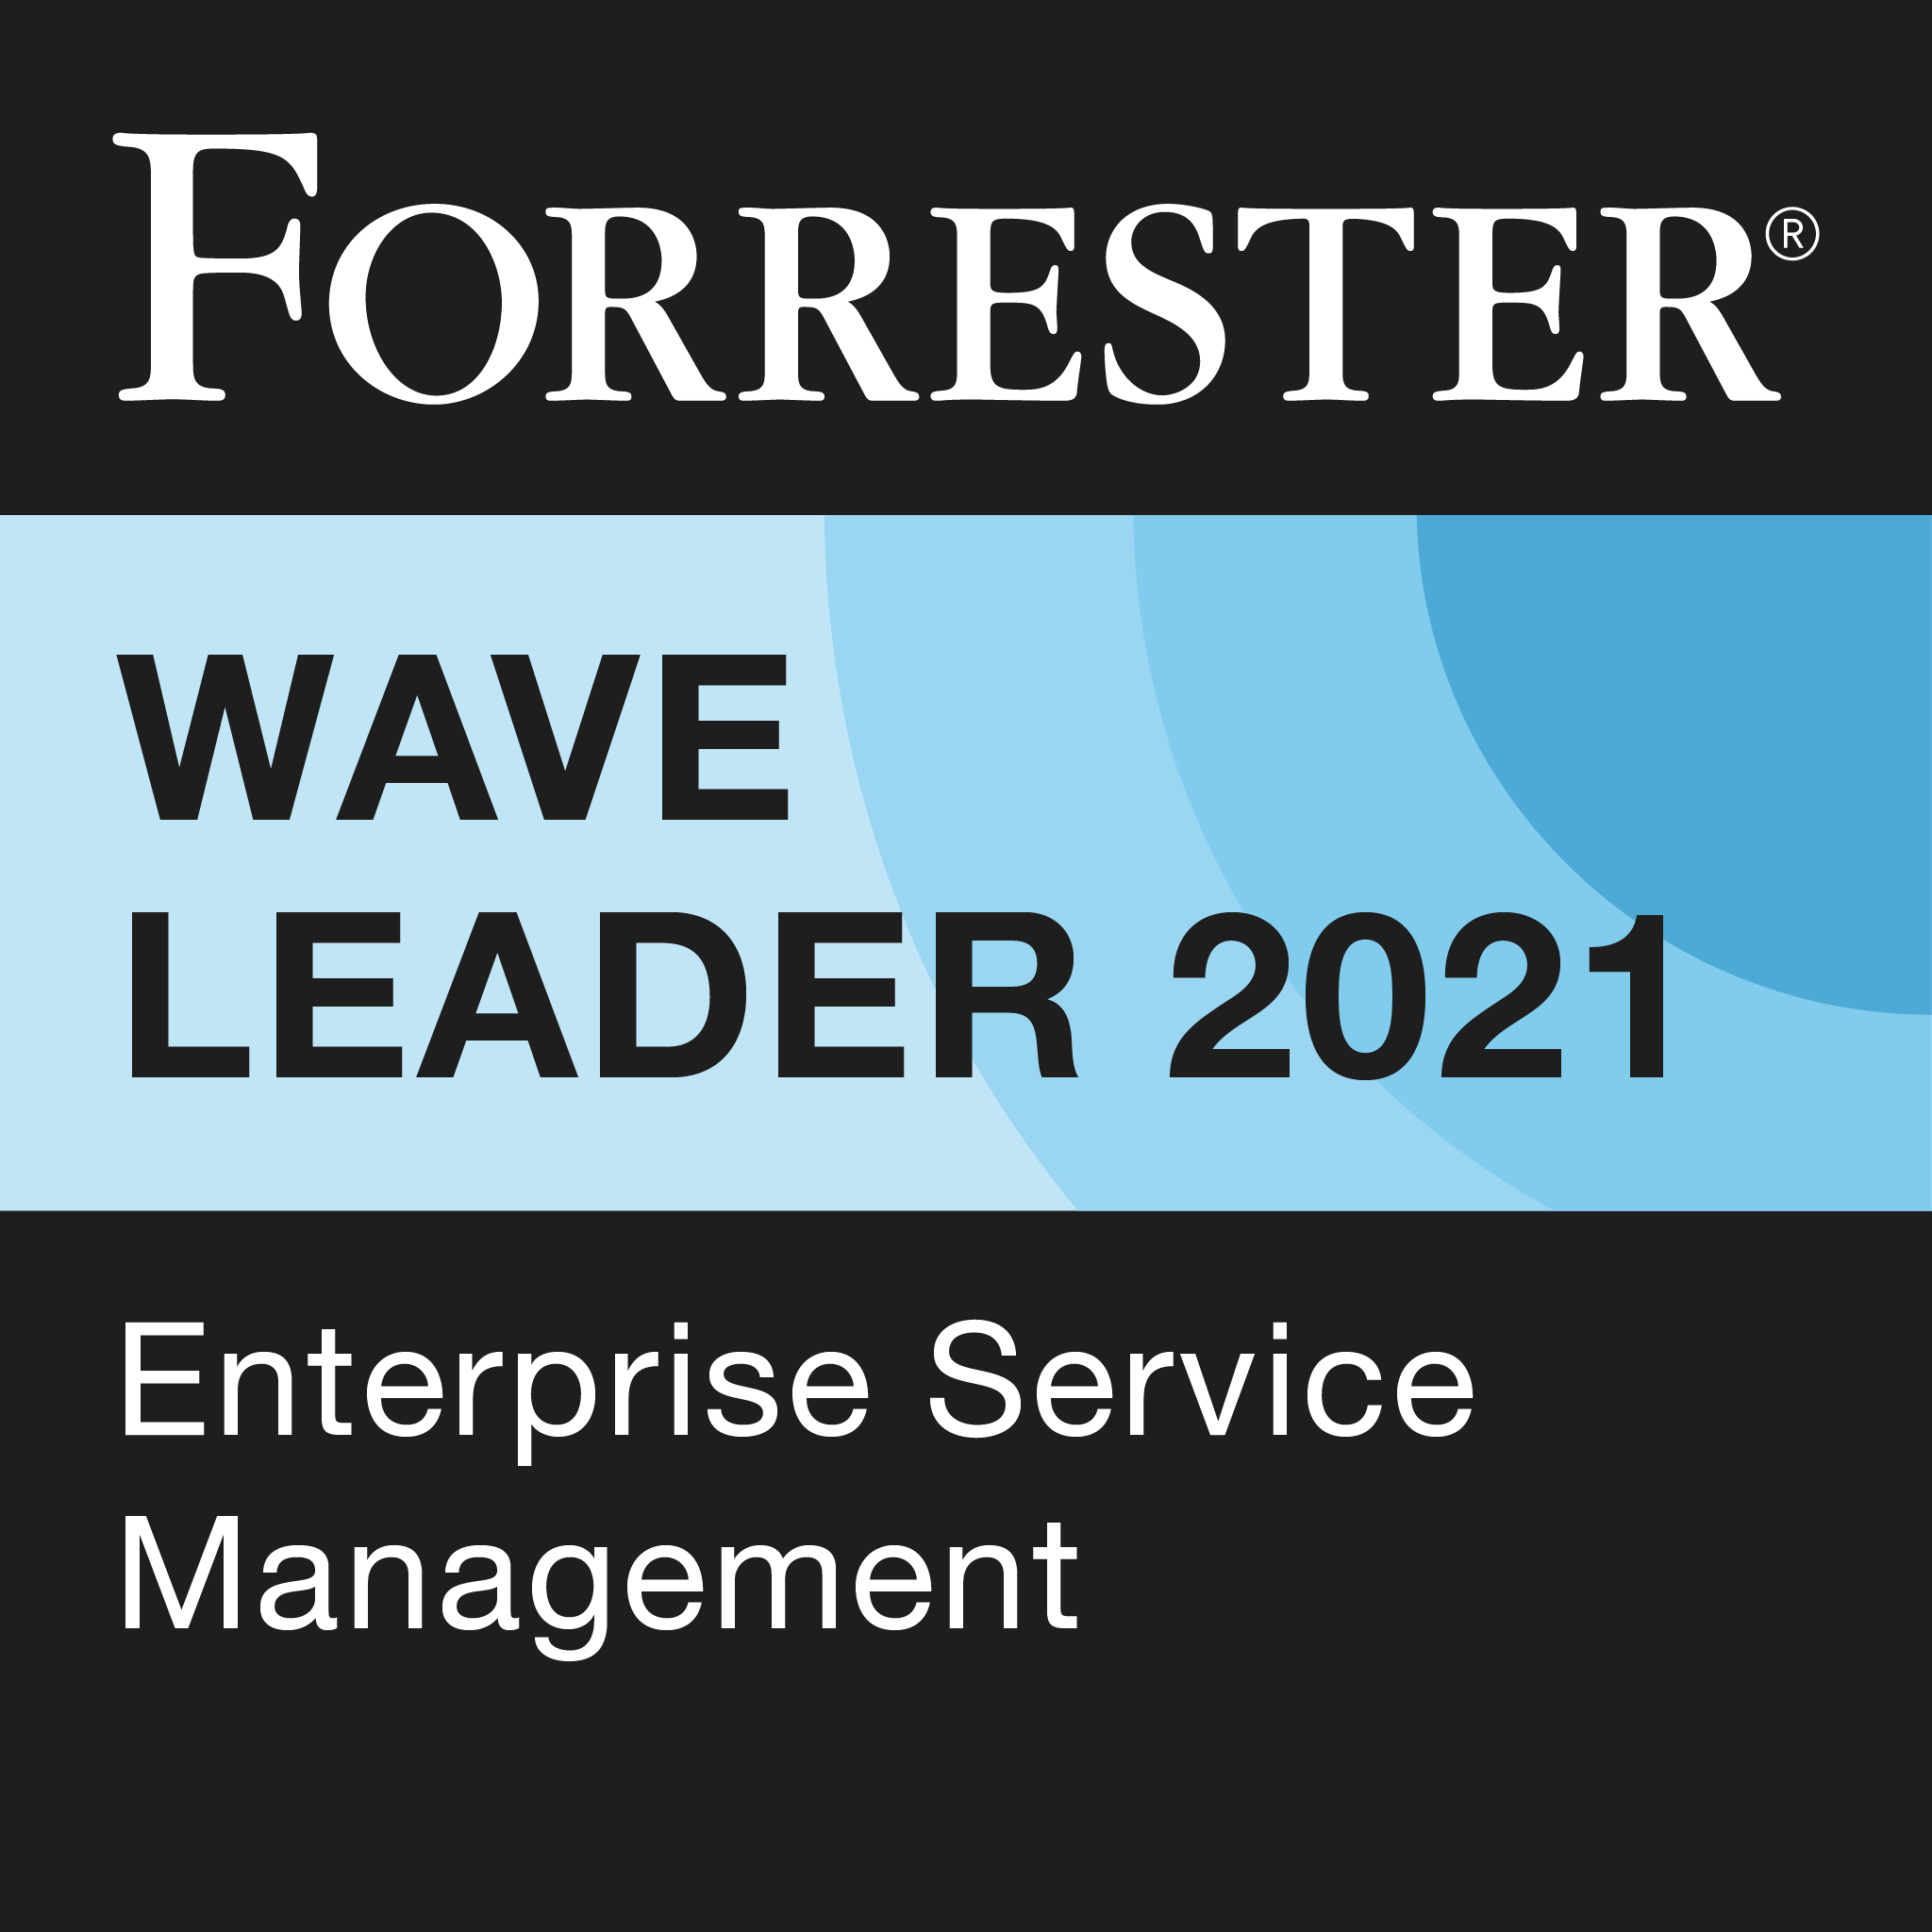 Lider no Forrester Wave 2021 Enterprise Service Management